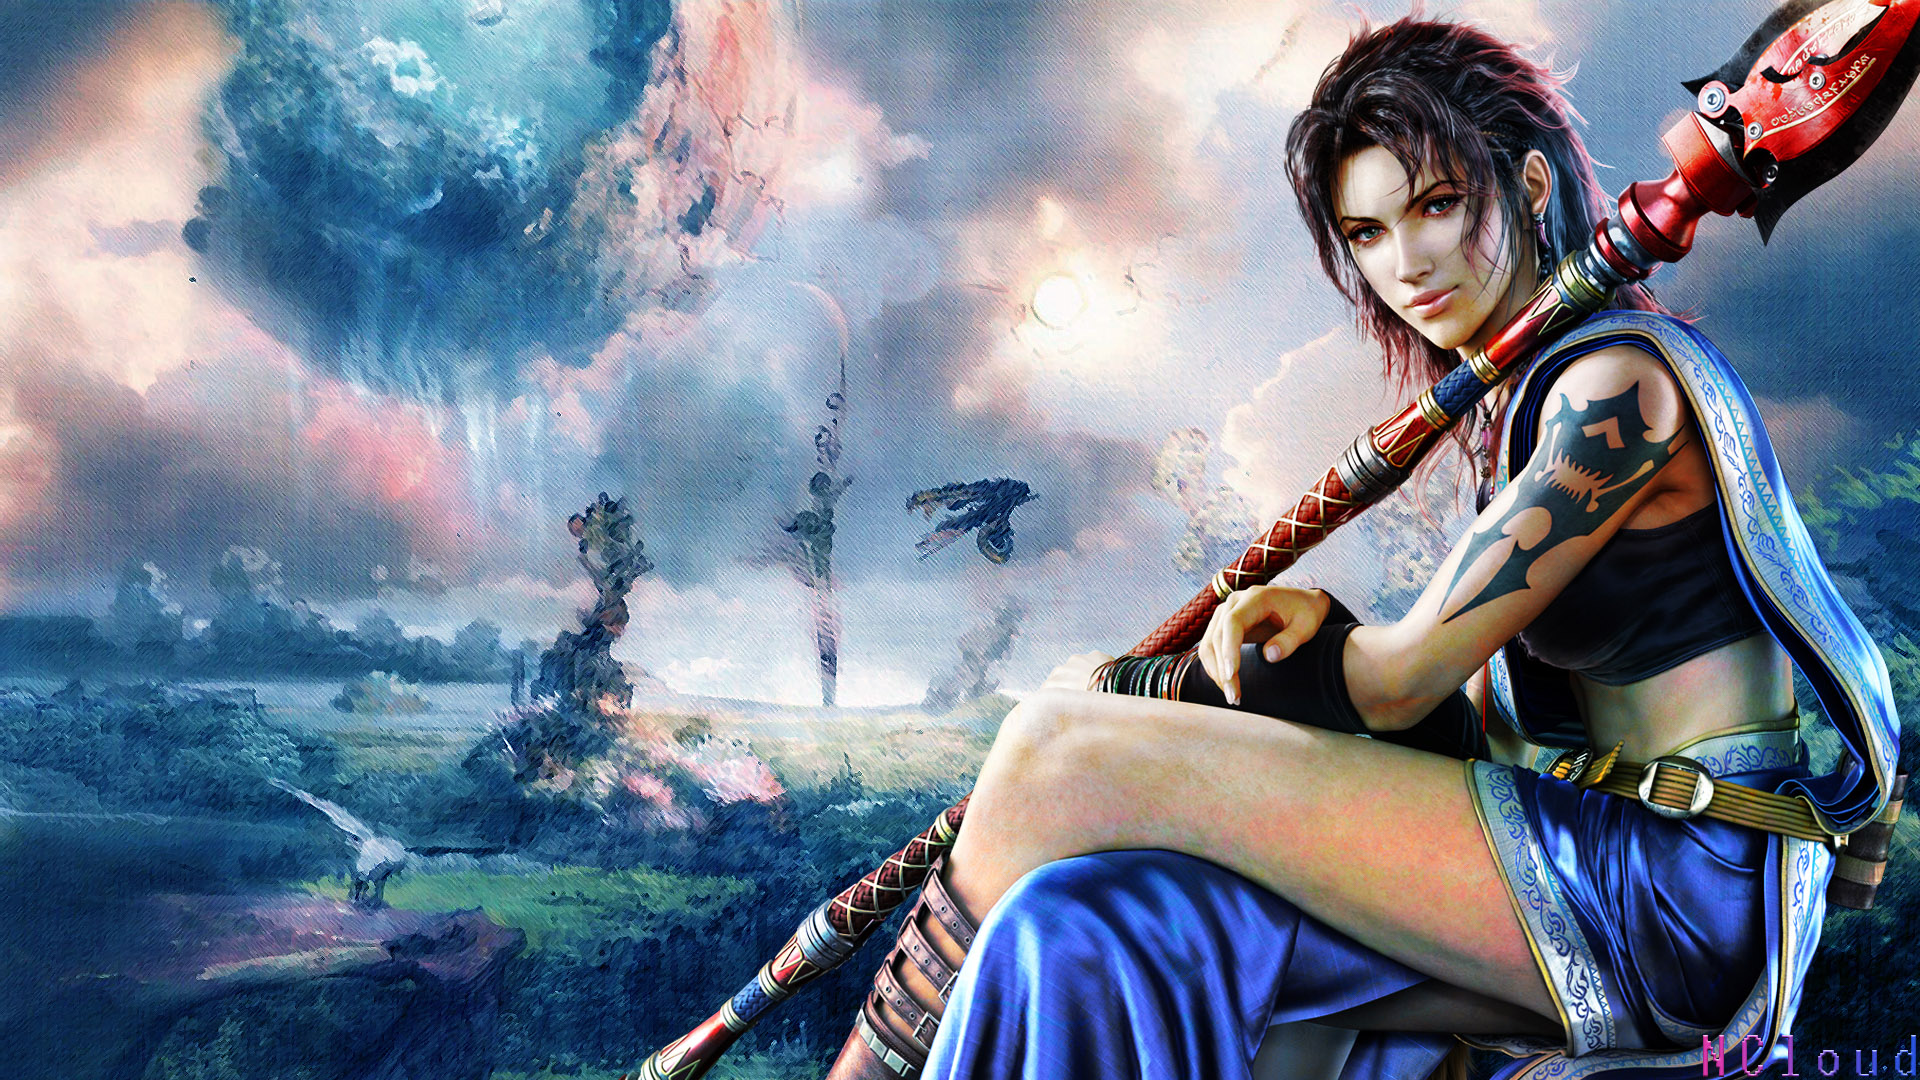 Final Fantasy Desktop Wallpaper In HD